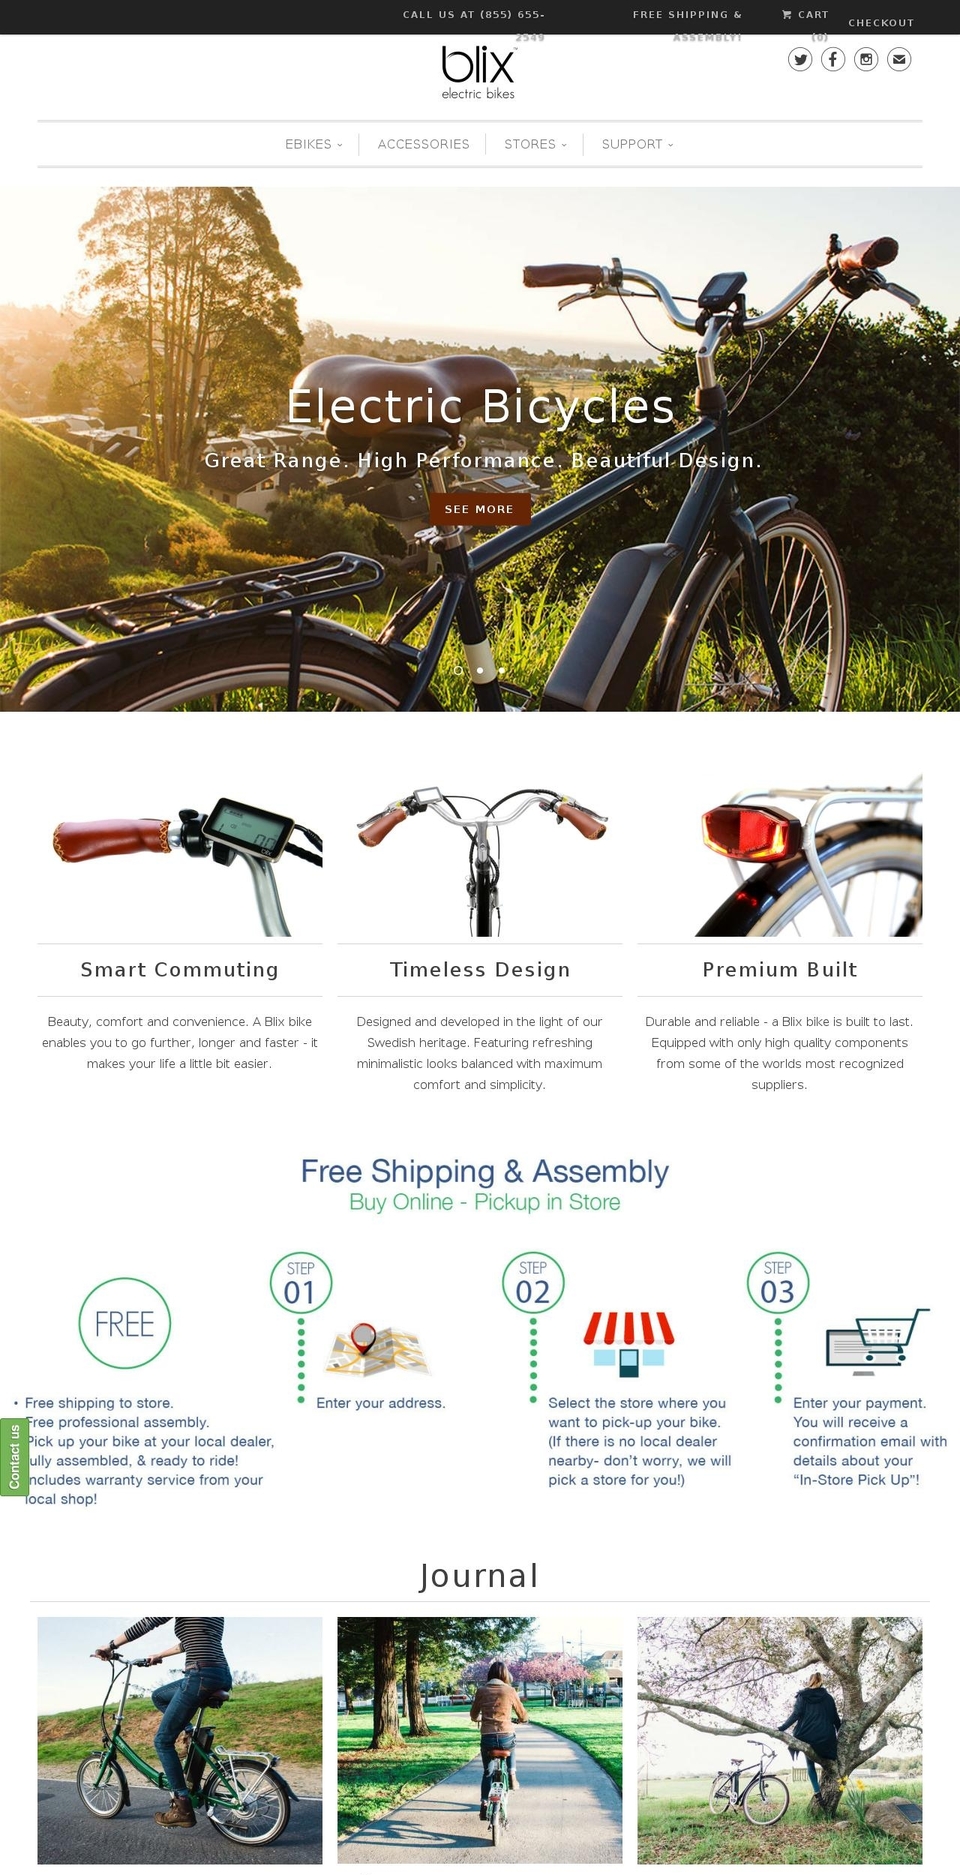 blixbike.com shopify website screenshot